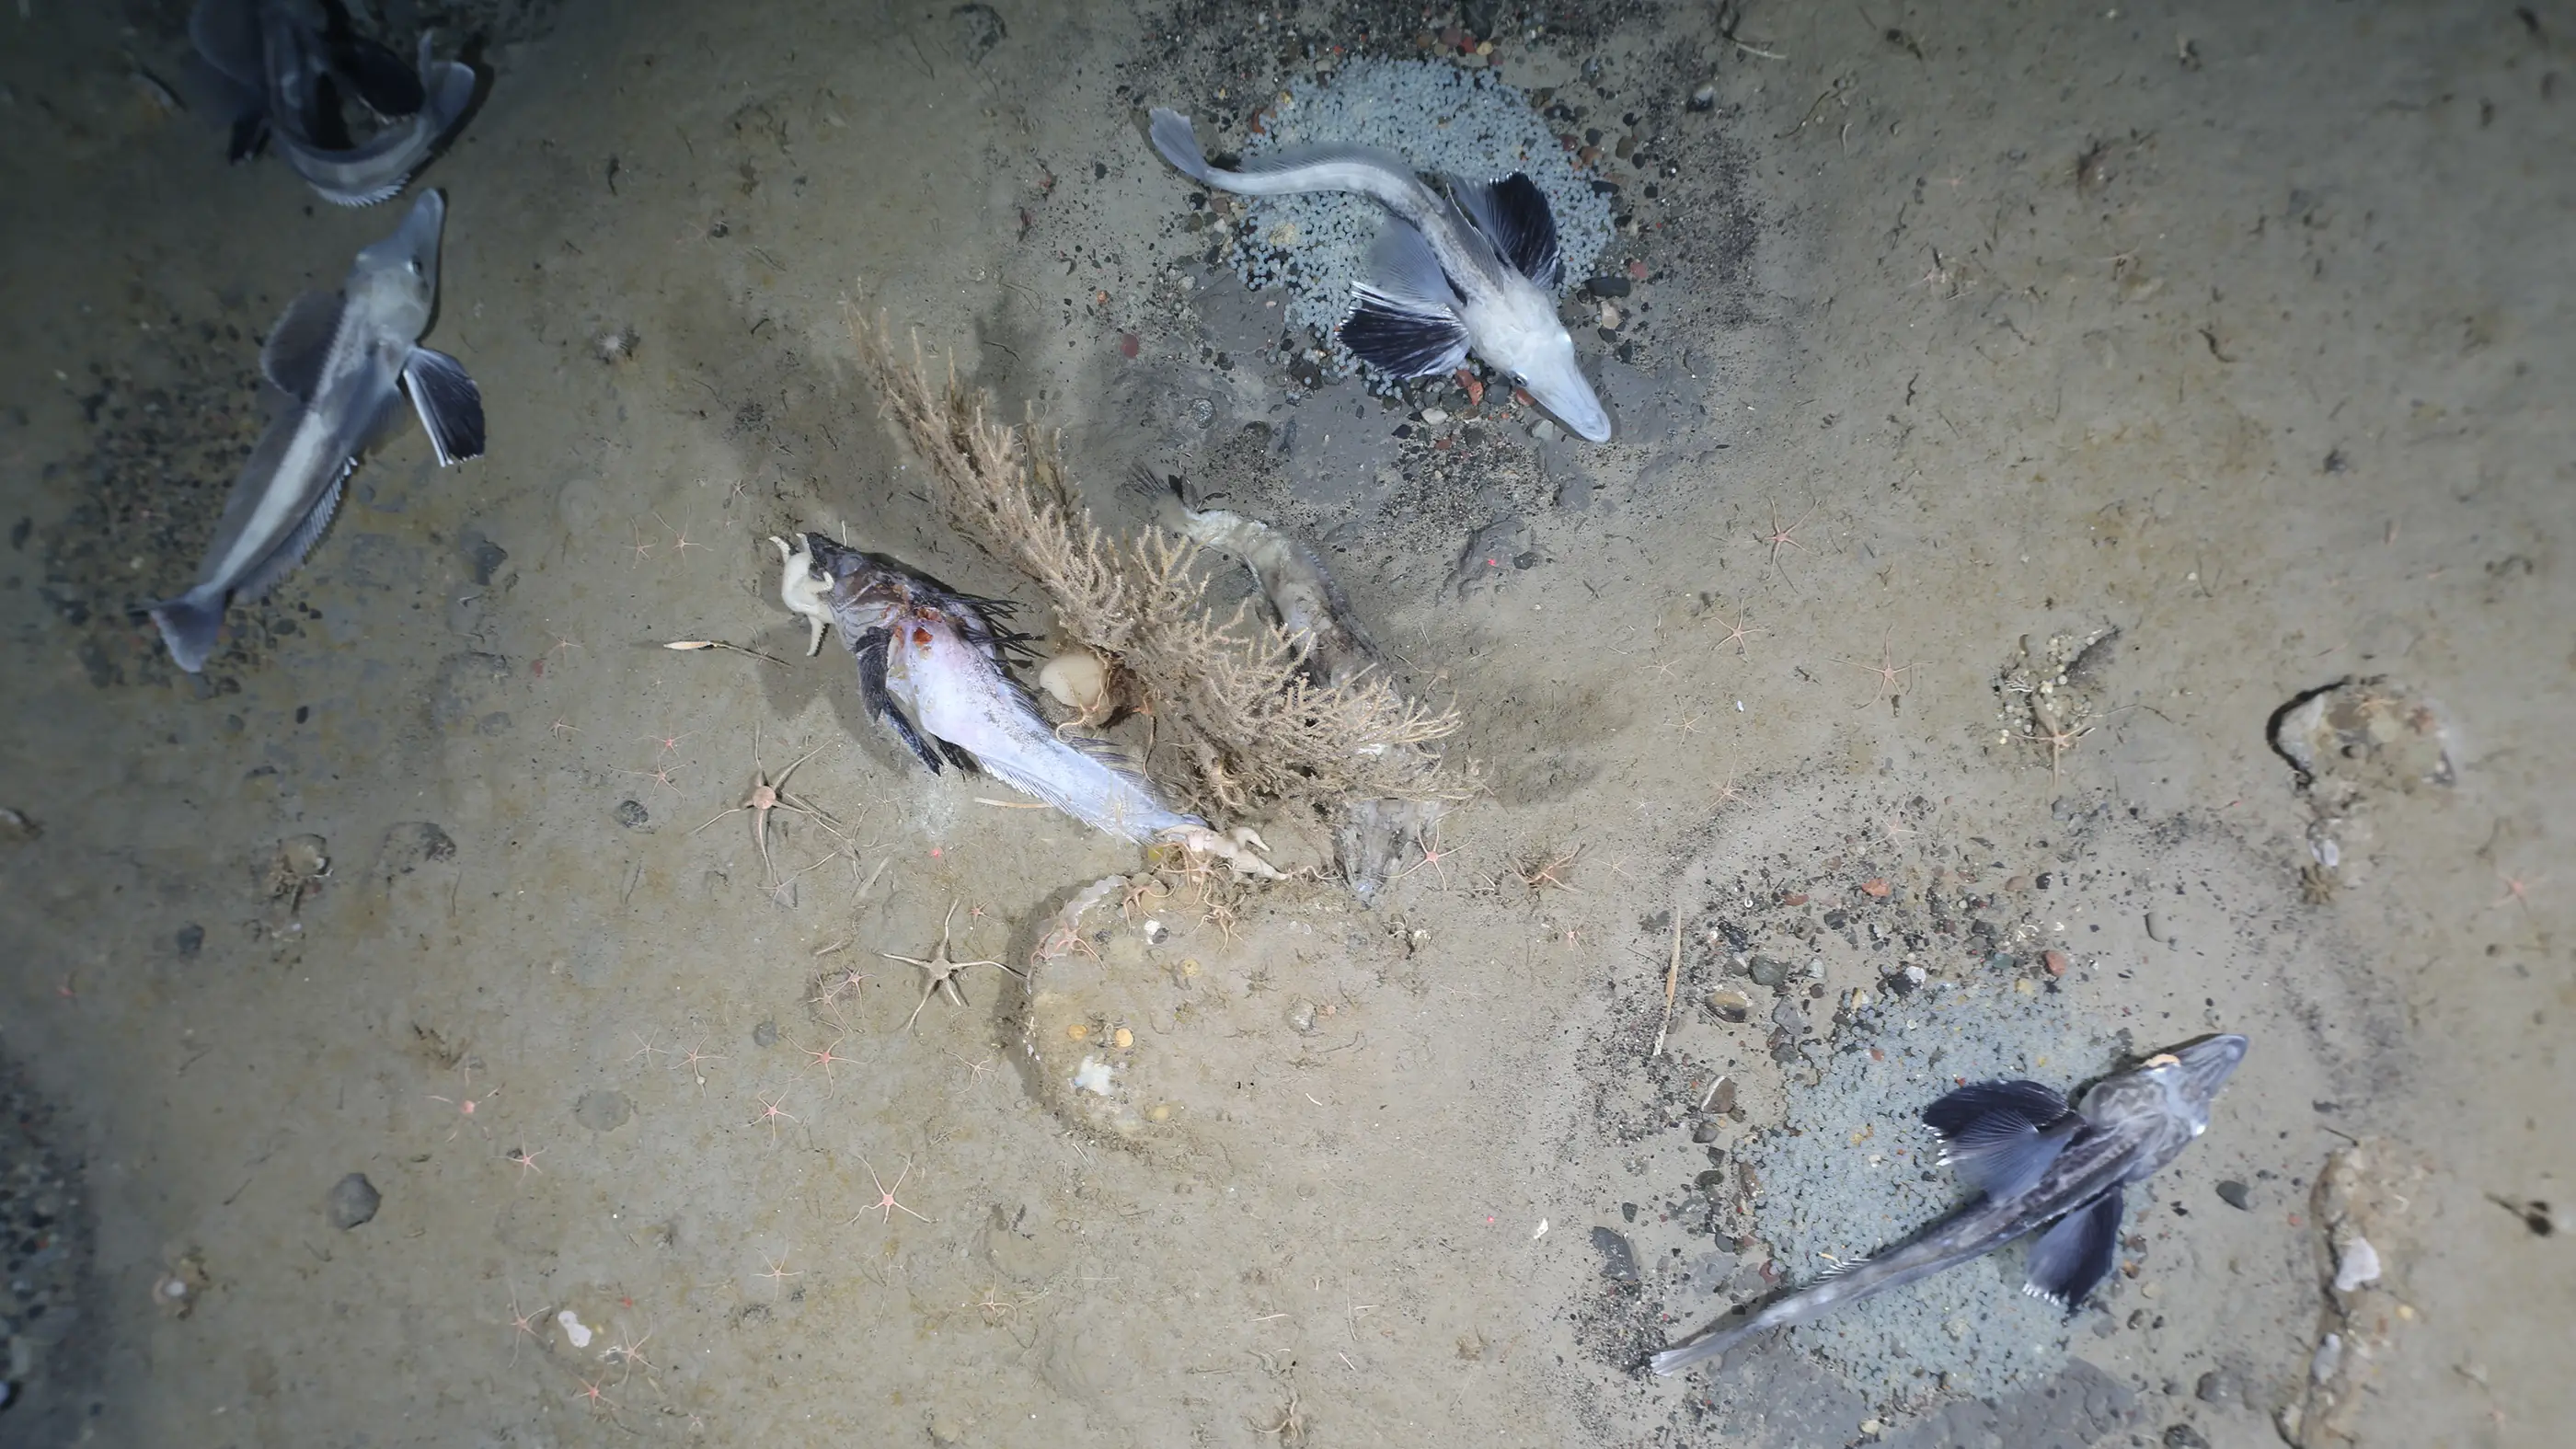 Chacun des nids de poisson des glaces semblait être gardé par un adulte. Entremêlés avec les nids se trouvaient des carcasses de poissons.